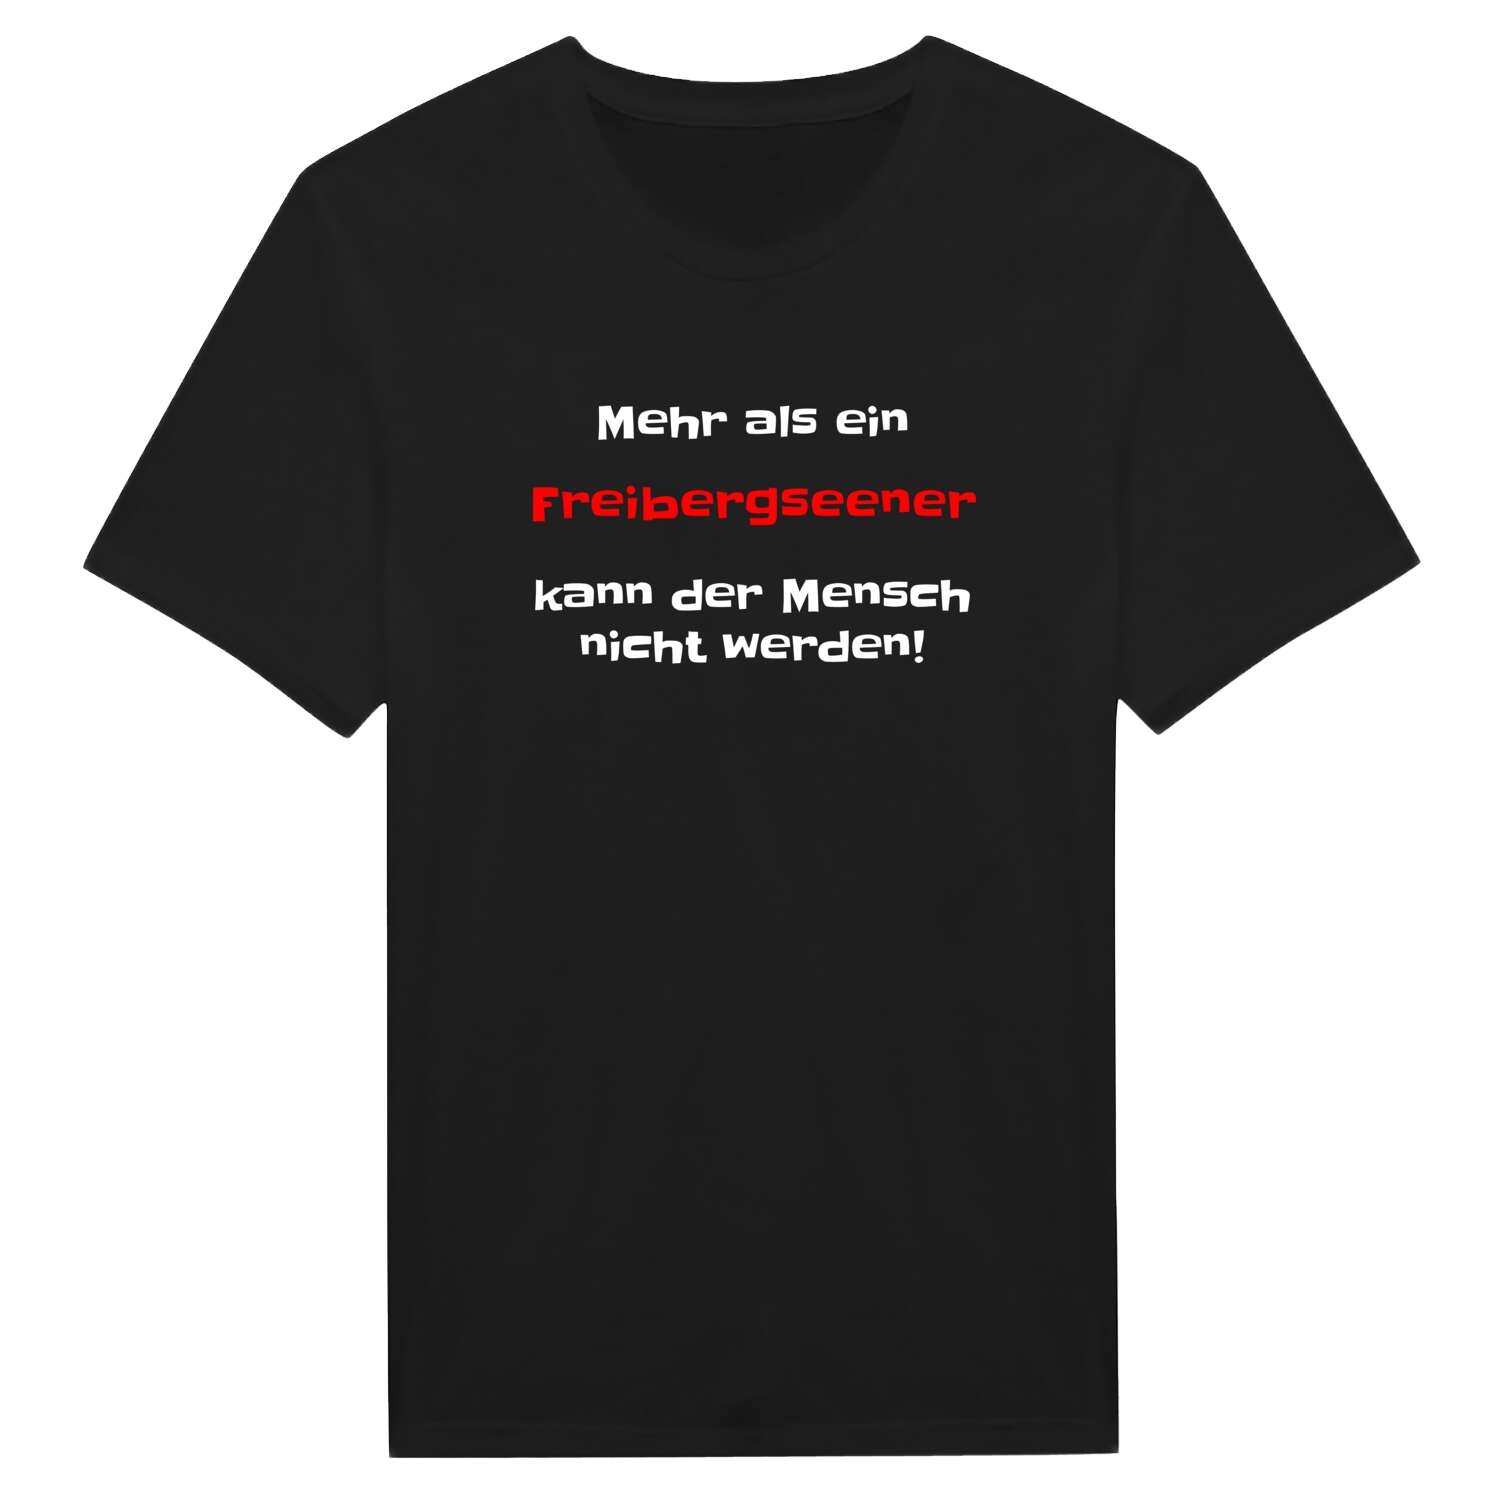 Freibergsee T-Shirt »Mehr als ein«